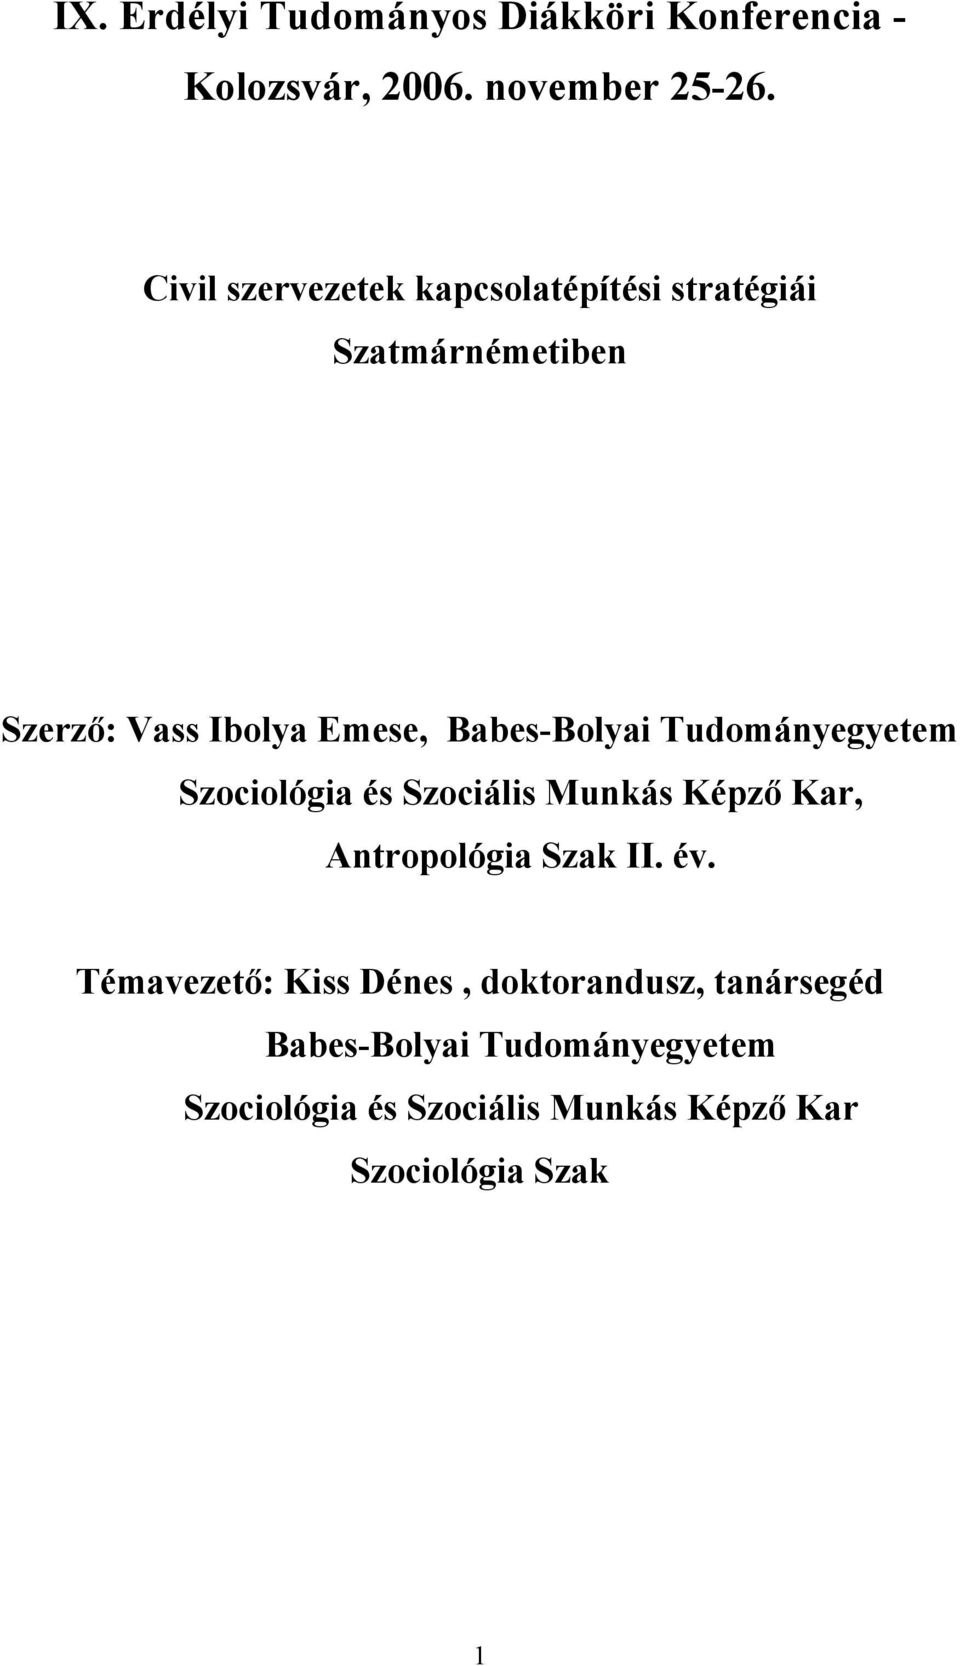 Babes-Bolyai Tudományegyetem Szociológia és Szociális Munkás Képző Kar, Antropológia Szak II. év.